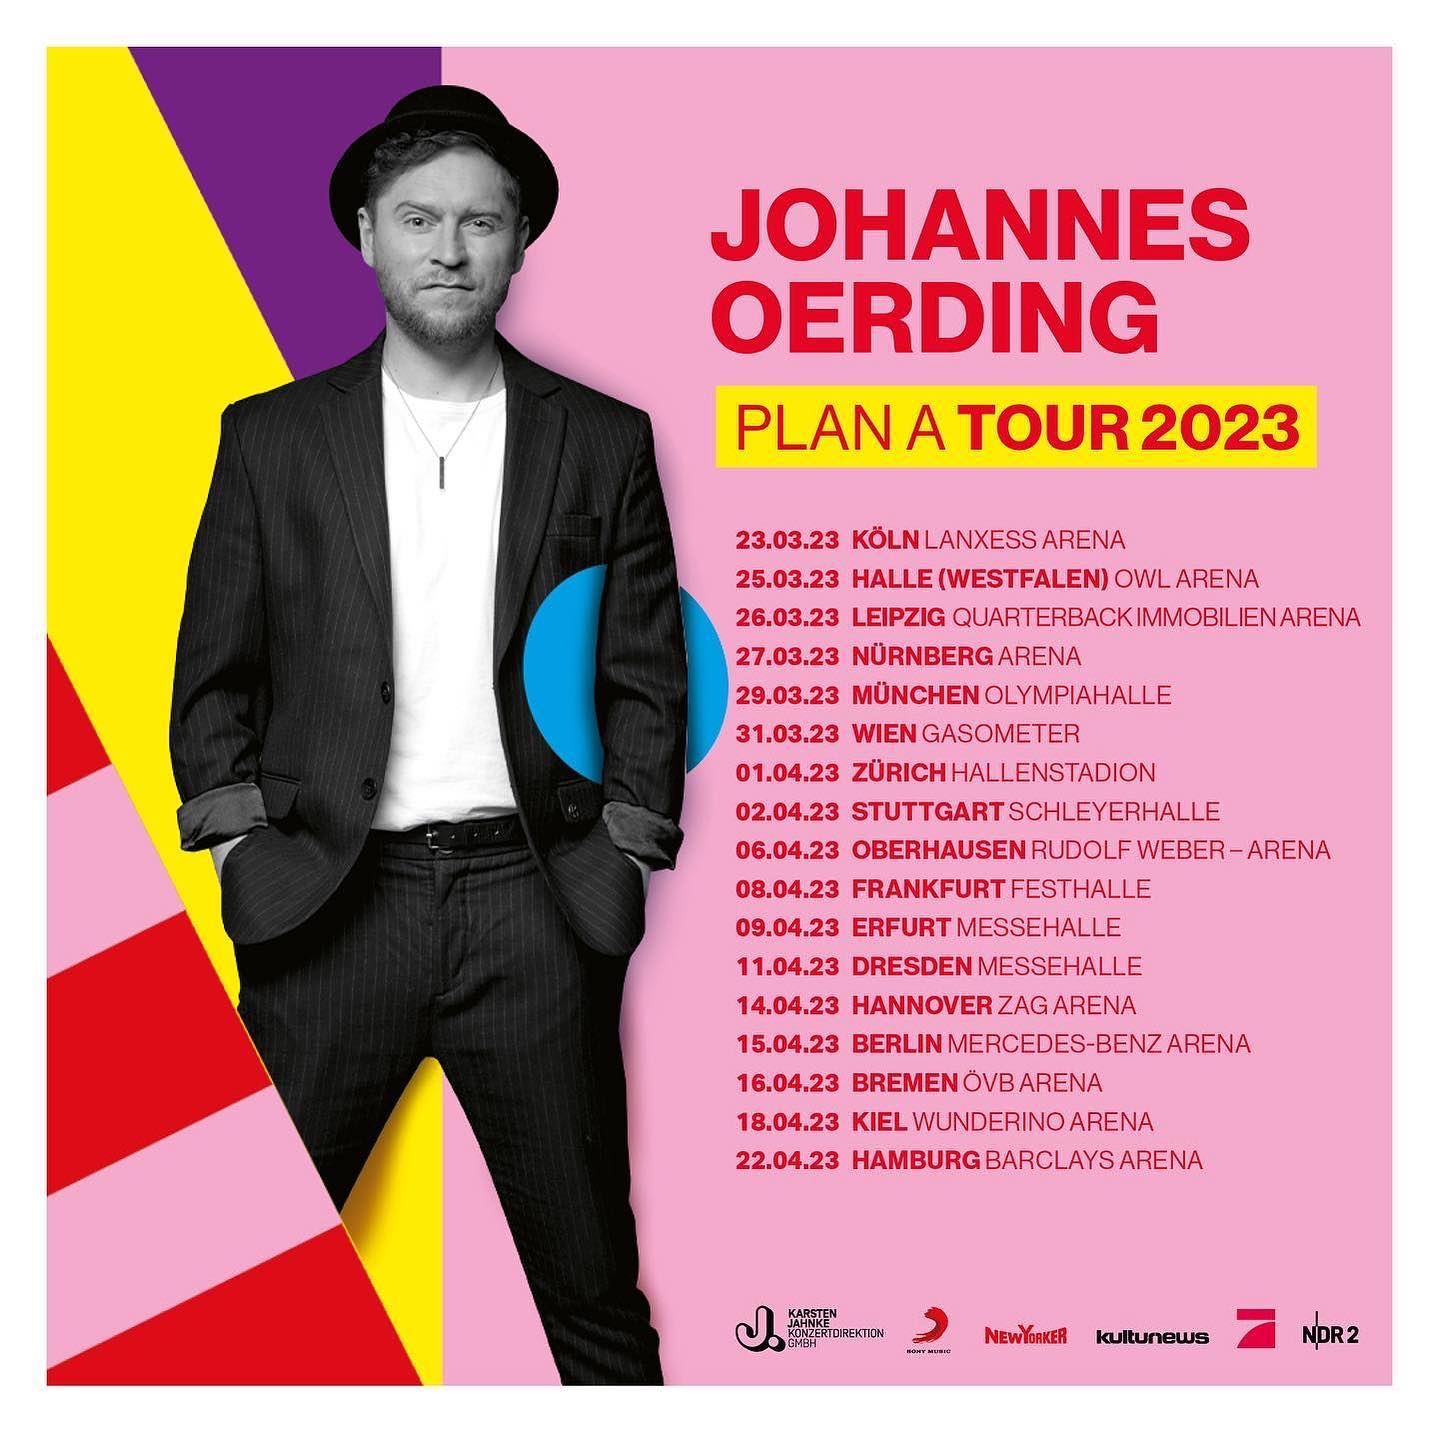 johannes oerding tour 2023 hannover